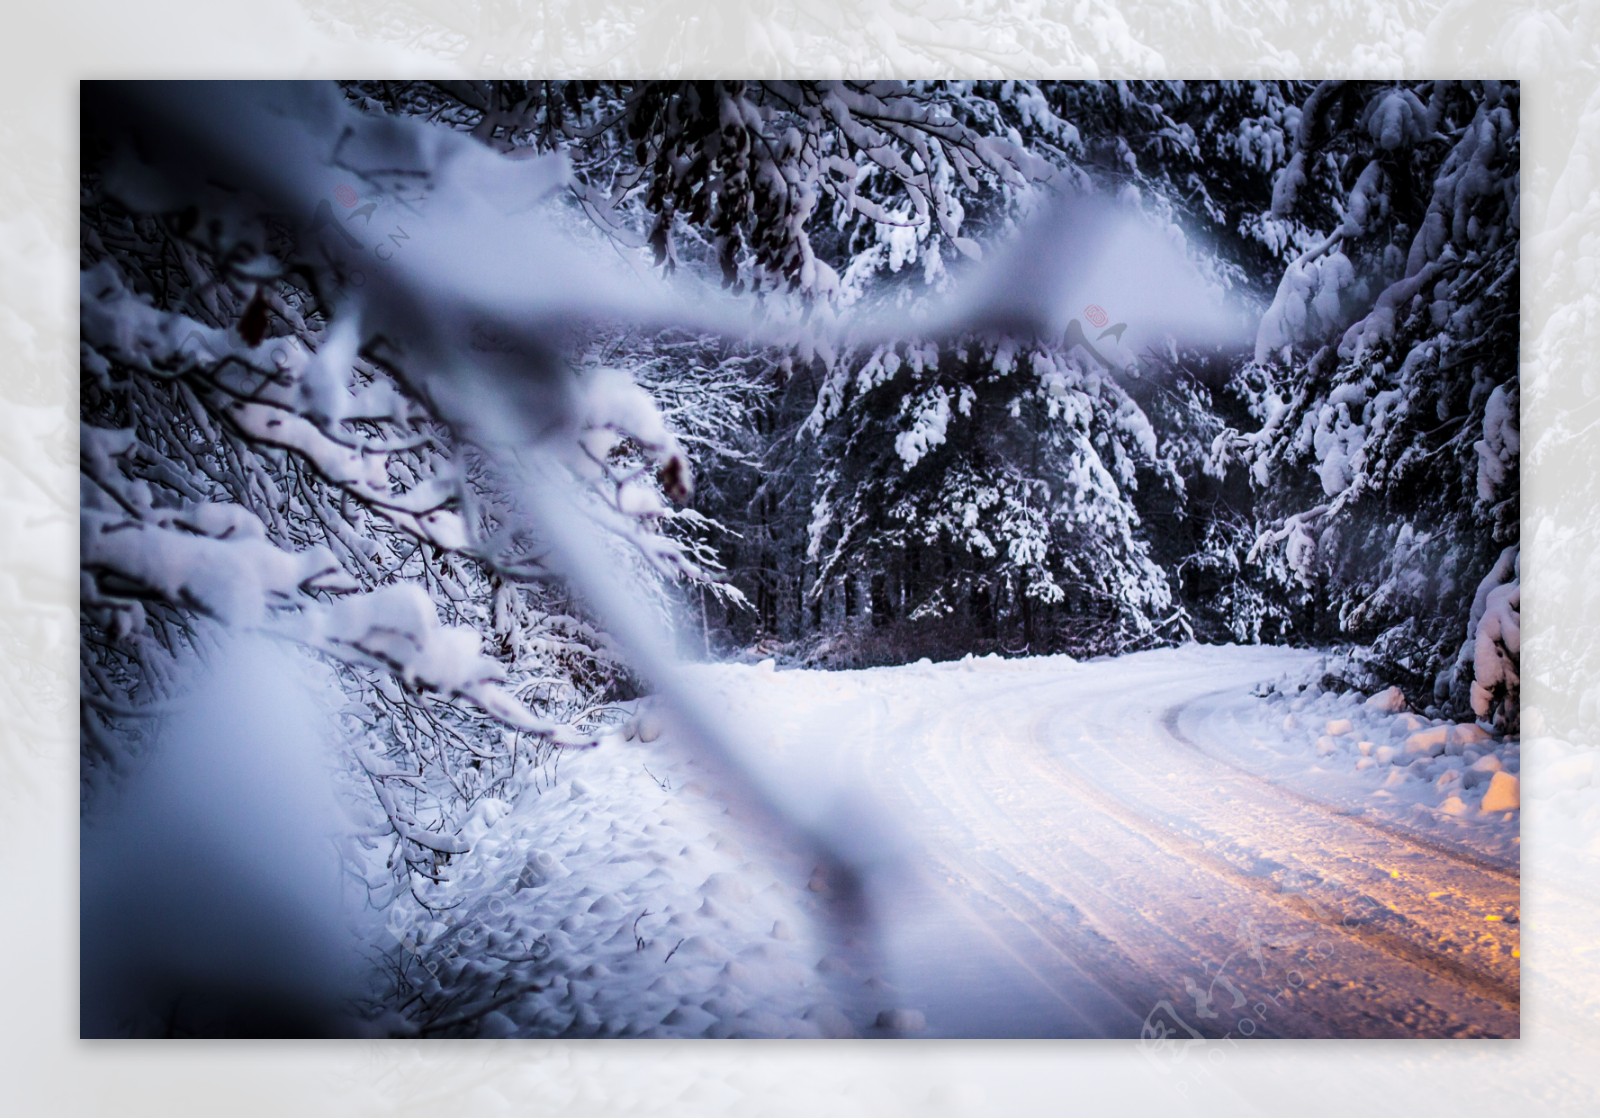 美丽冬天公路风景图片